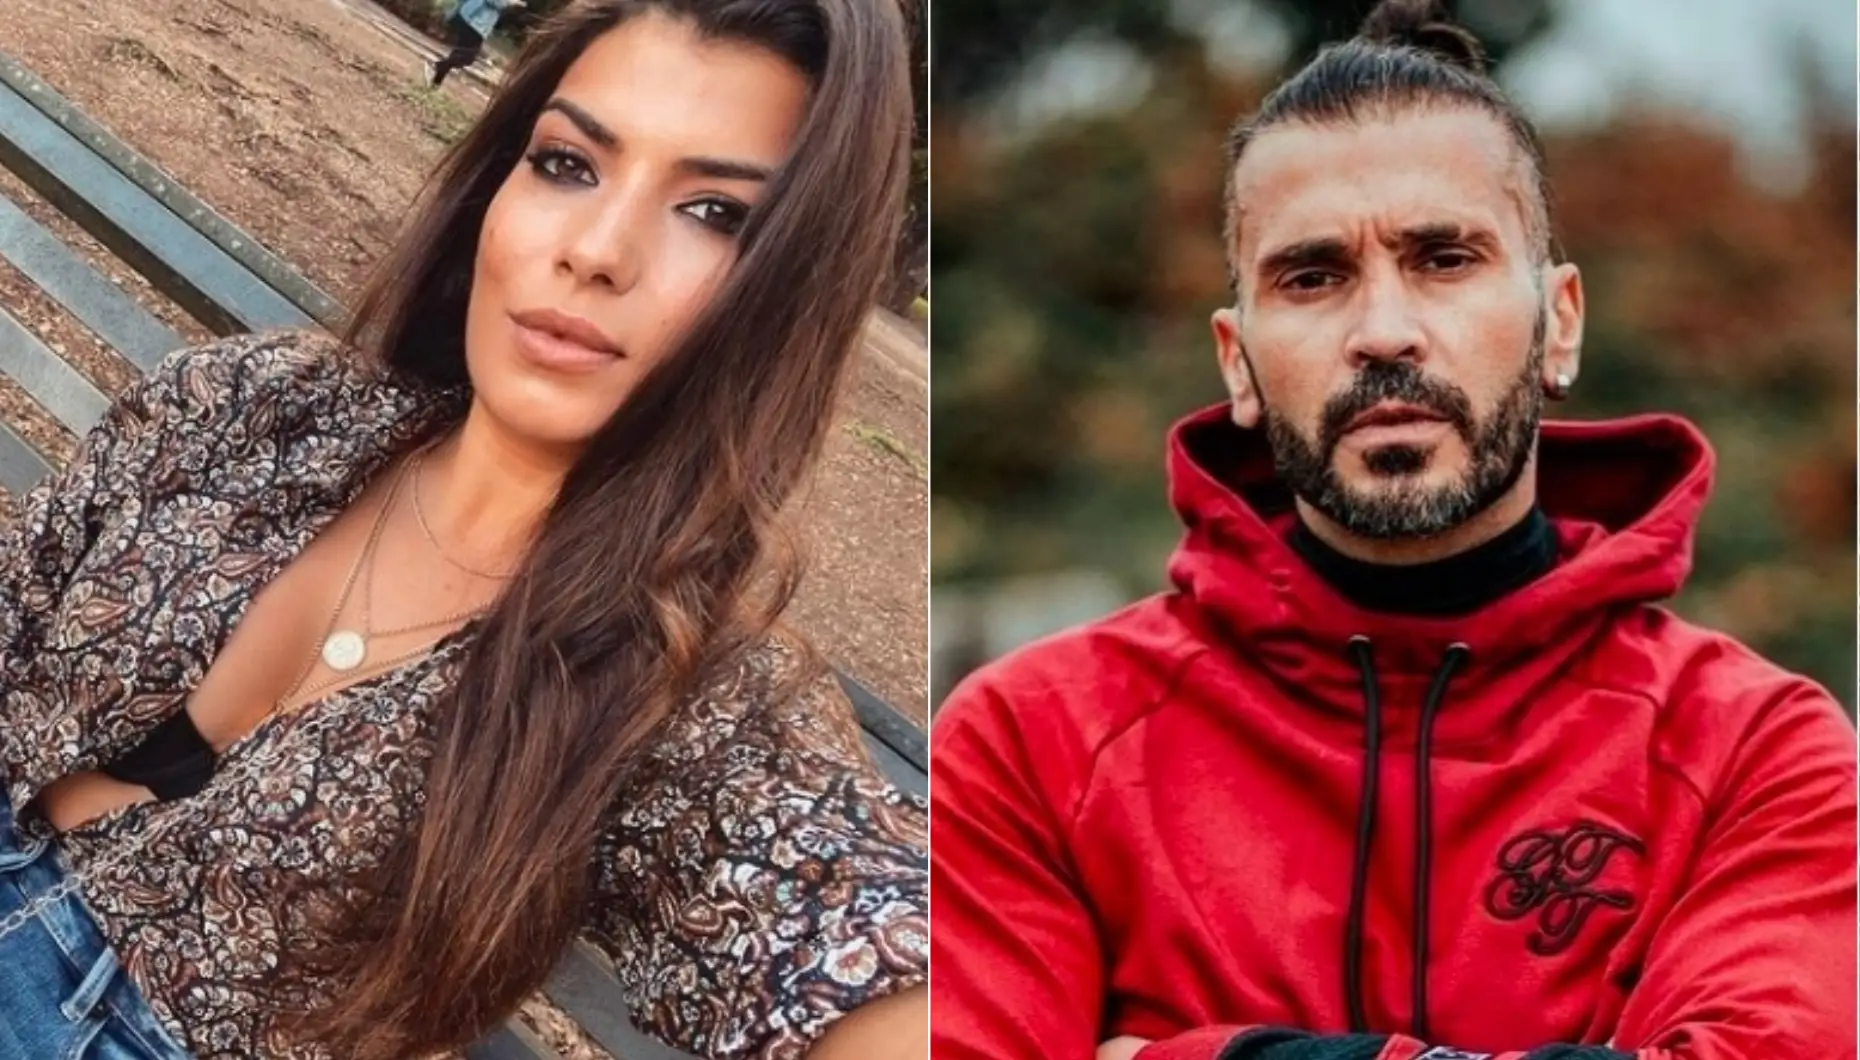 Big Brother, Sofia Sousa, Bruno Savate